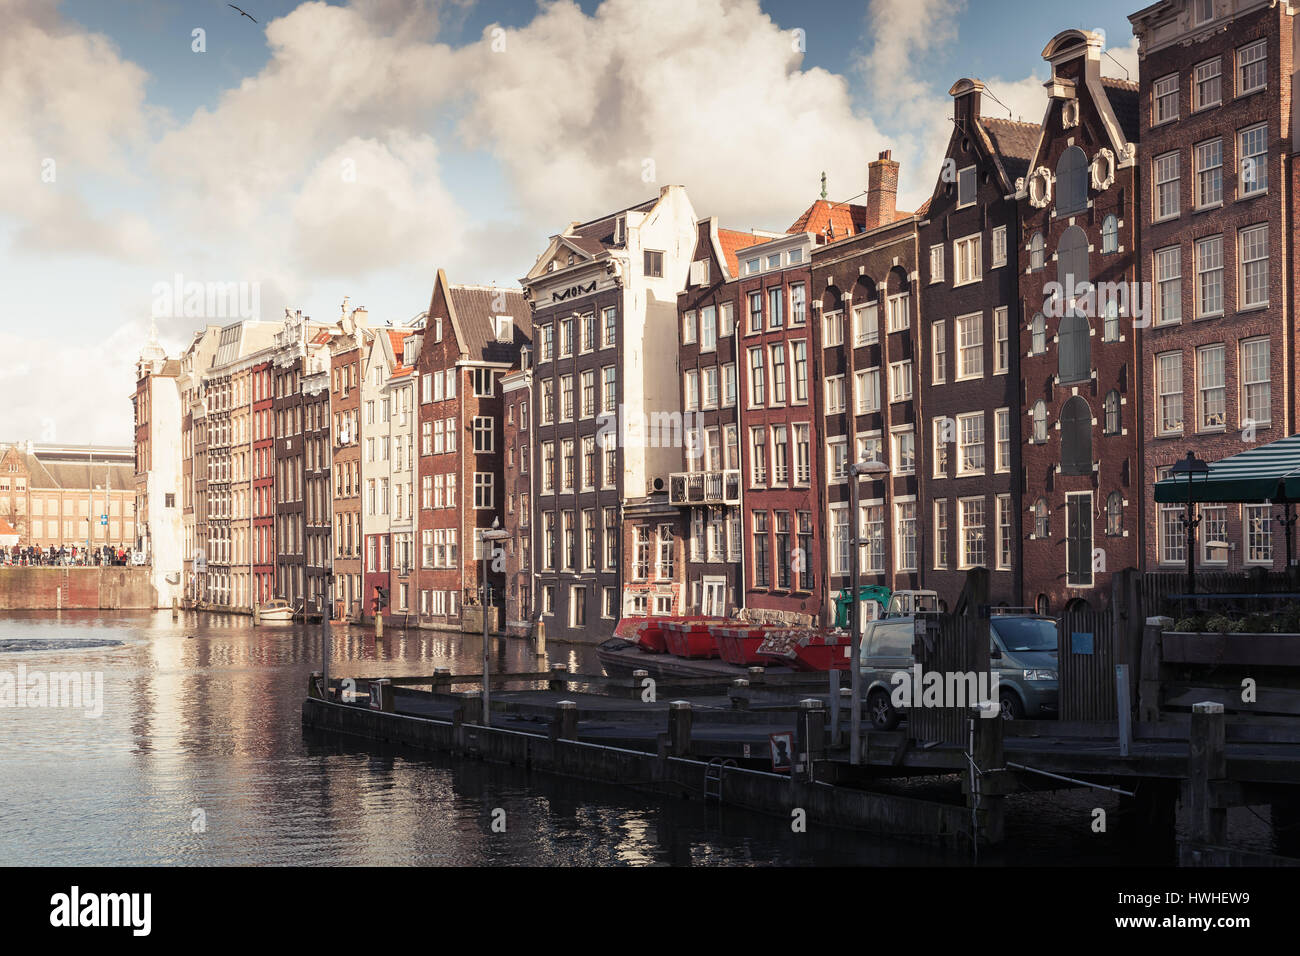 Vieux maisons traditionnelles colorées vivant le long de la côte du canal dans la vieille ville d'Amsterdam, Pays-Bas. Filtre de correction tonale vintage chaud, effet retro style Banque D'Images